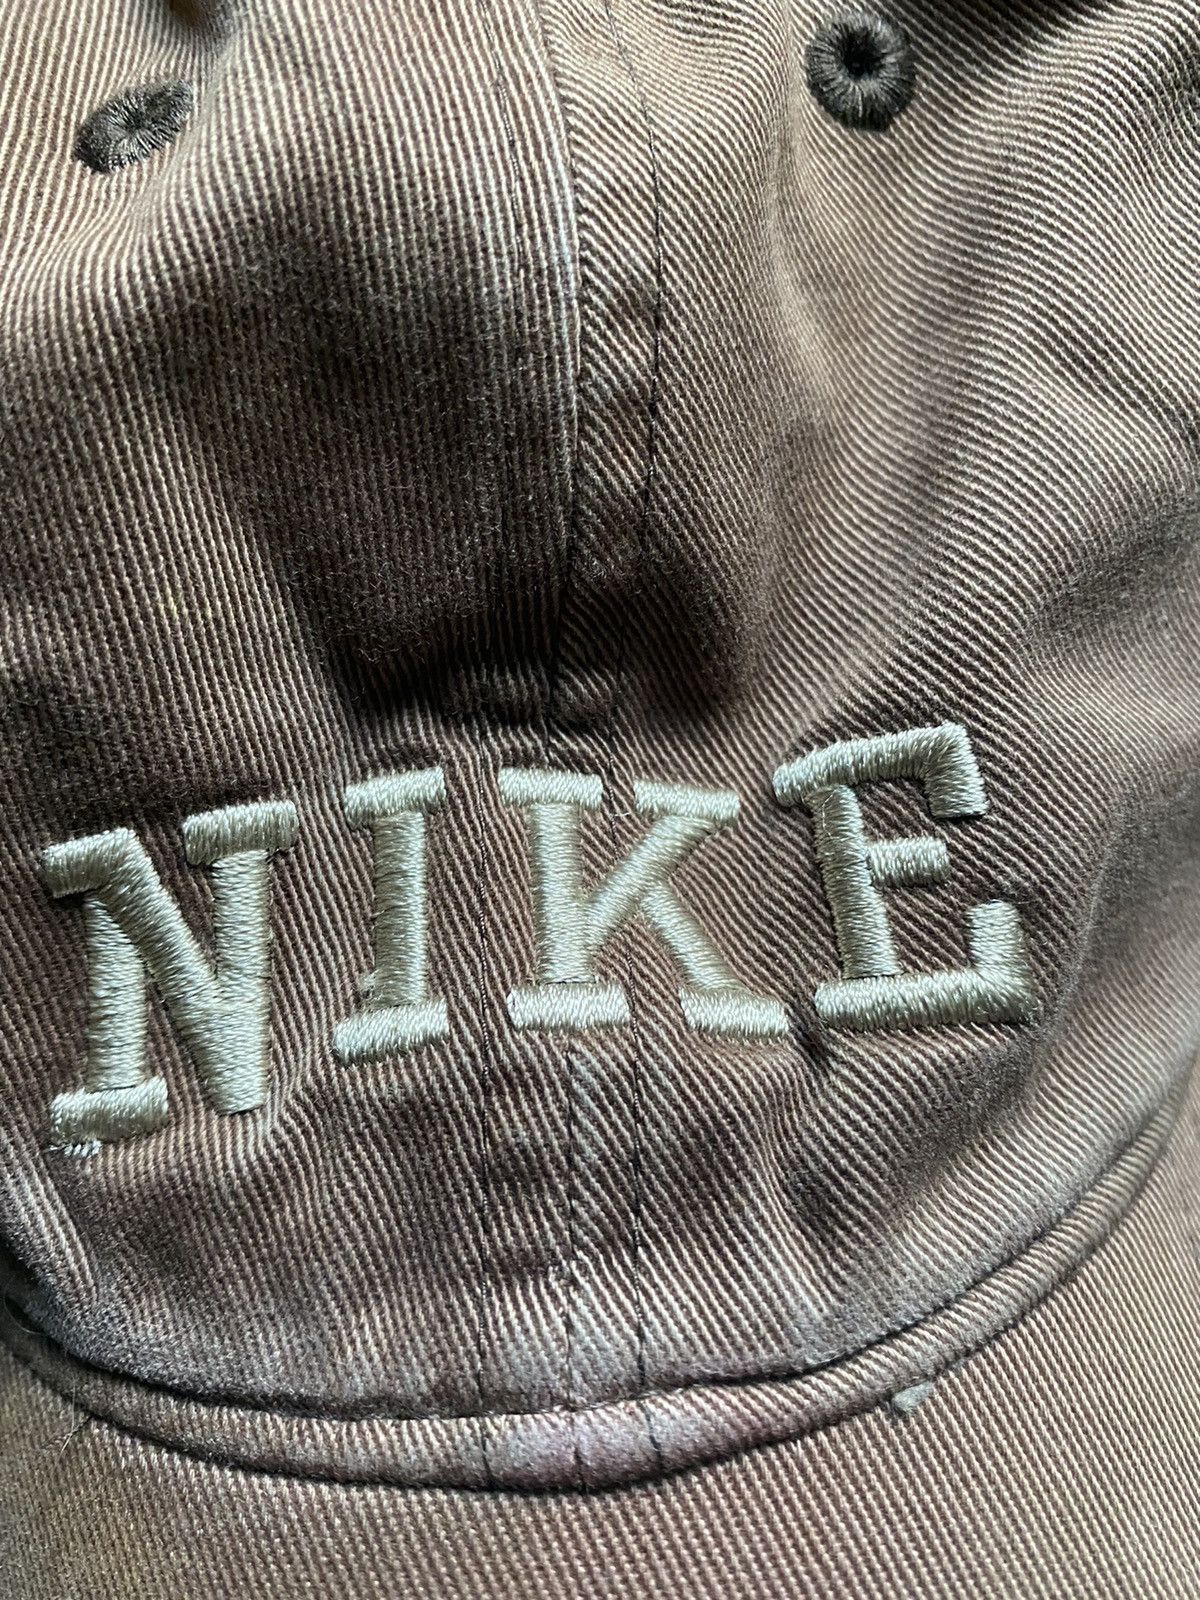 Nike Vintage Nike hat mocha brown Size ONE SIZE - 4 Thumbnail